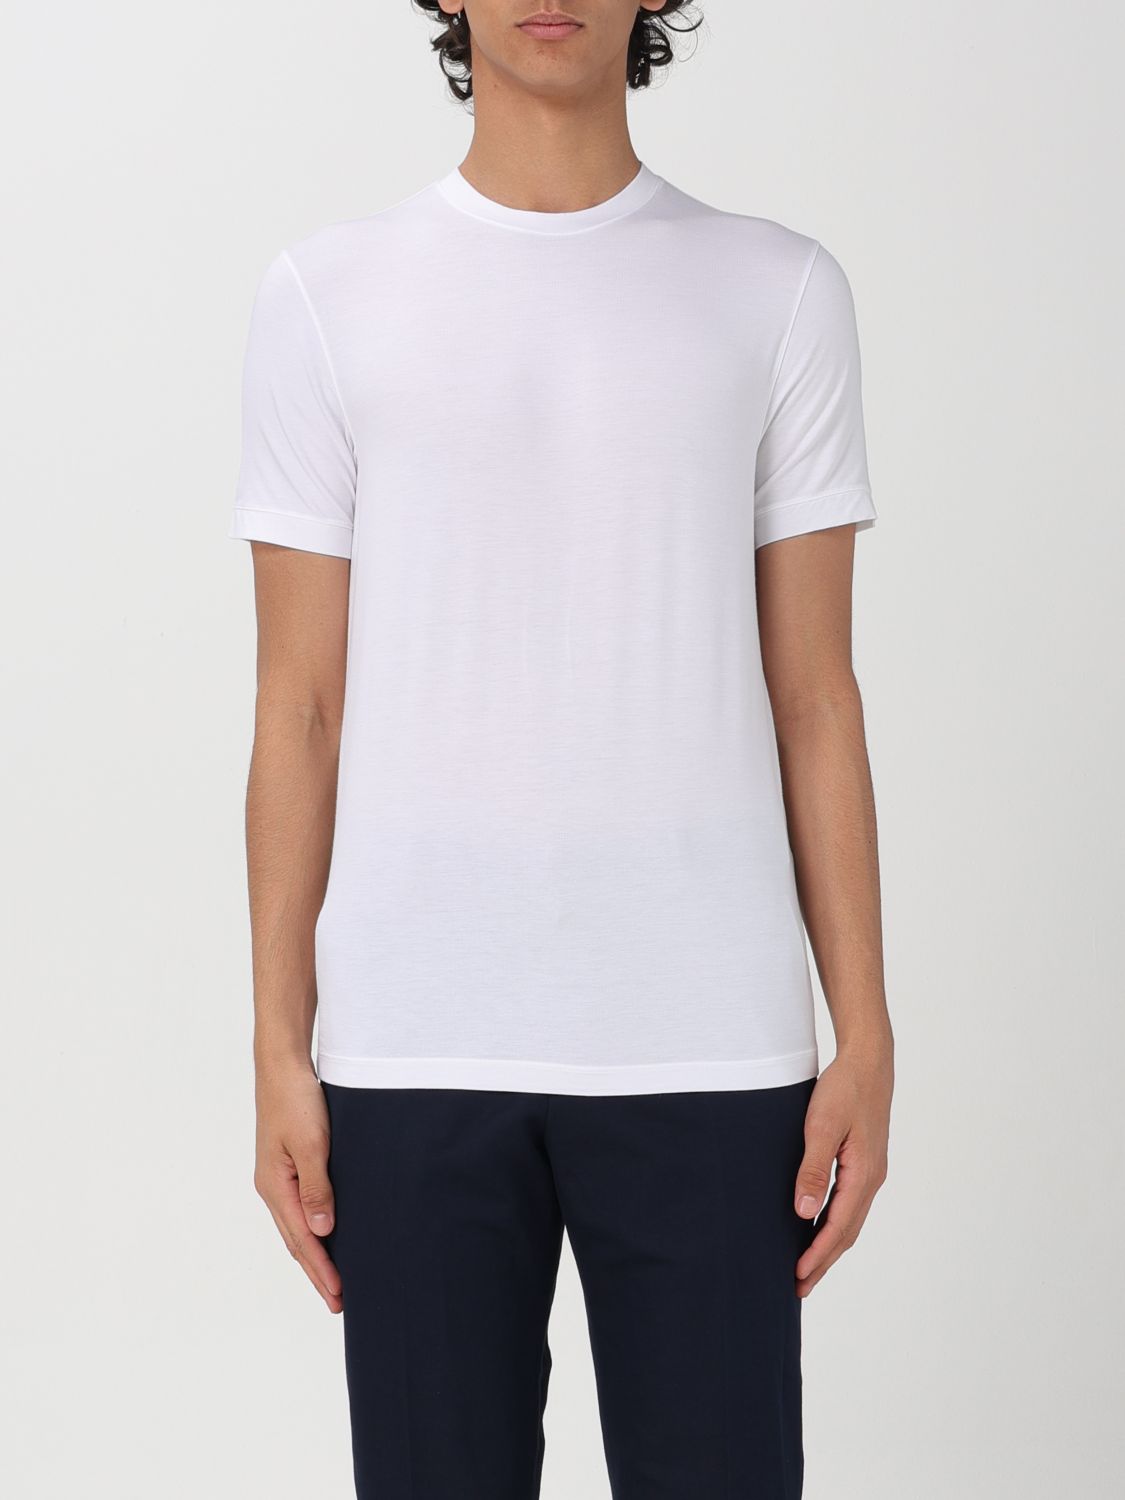 Giorgio Armani T-Shirt GIORGIO ARMANI Men color White